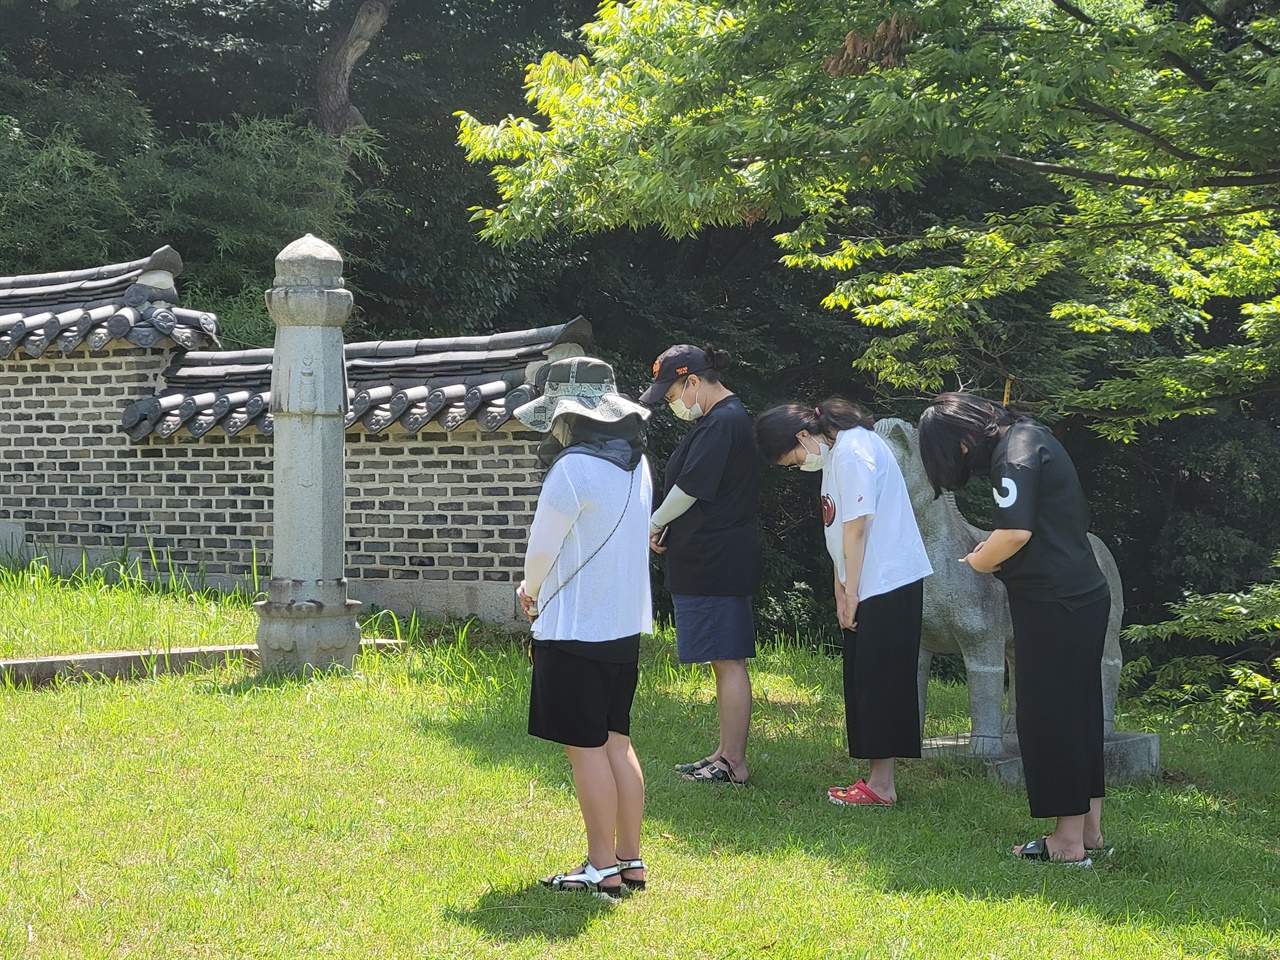 김좌진 장군의 묘소를 찾은 가족 단위 관광객들이 묵념하며 추모했다.